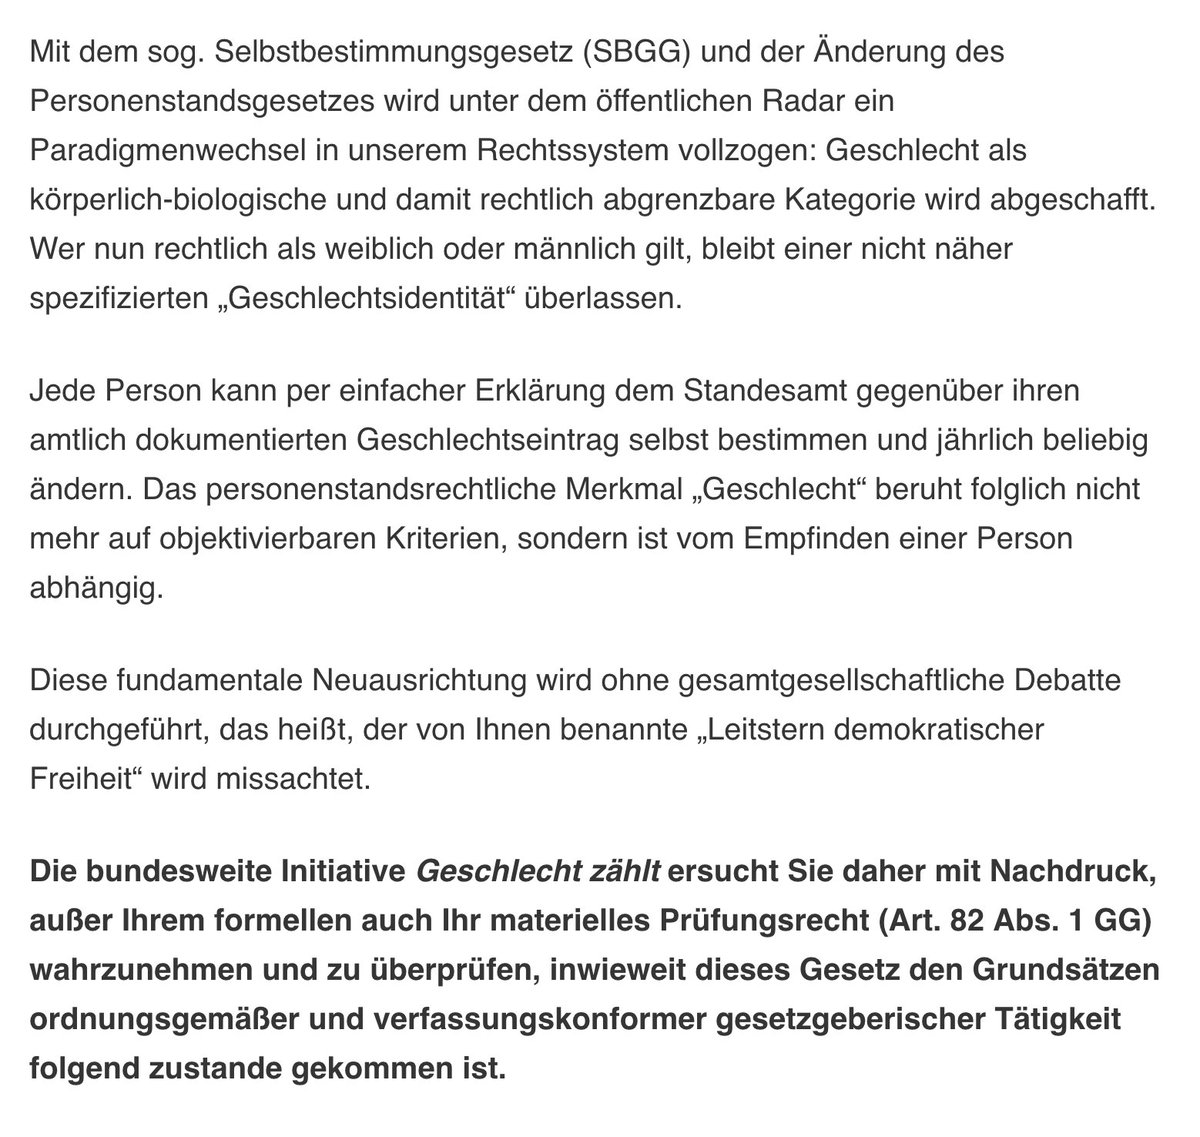 Die Initiative Geschlecht zählt hat einen offenen Brief an den Bundespräsidenten Frank-Walter #Steinmeier verfasst und fordern ihn auf, das #selbstbestimmungsgesetz zu überprüfen und nicht zu unterzeichnen. 
 
'Die bundesweite Initiative Geschlecht zählt ersucht Sie daher mit…